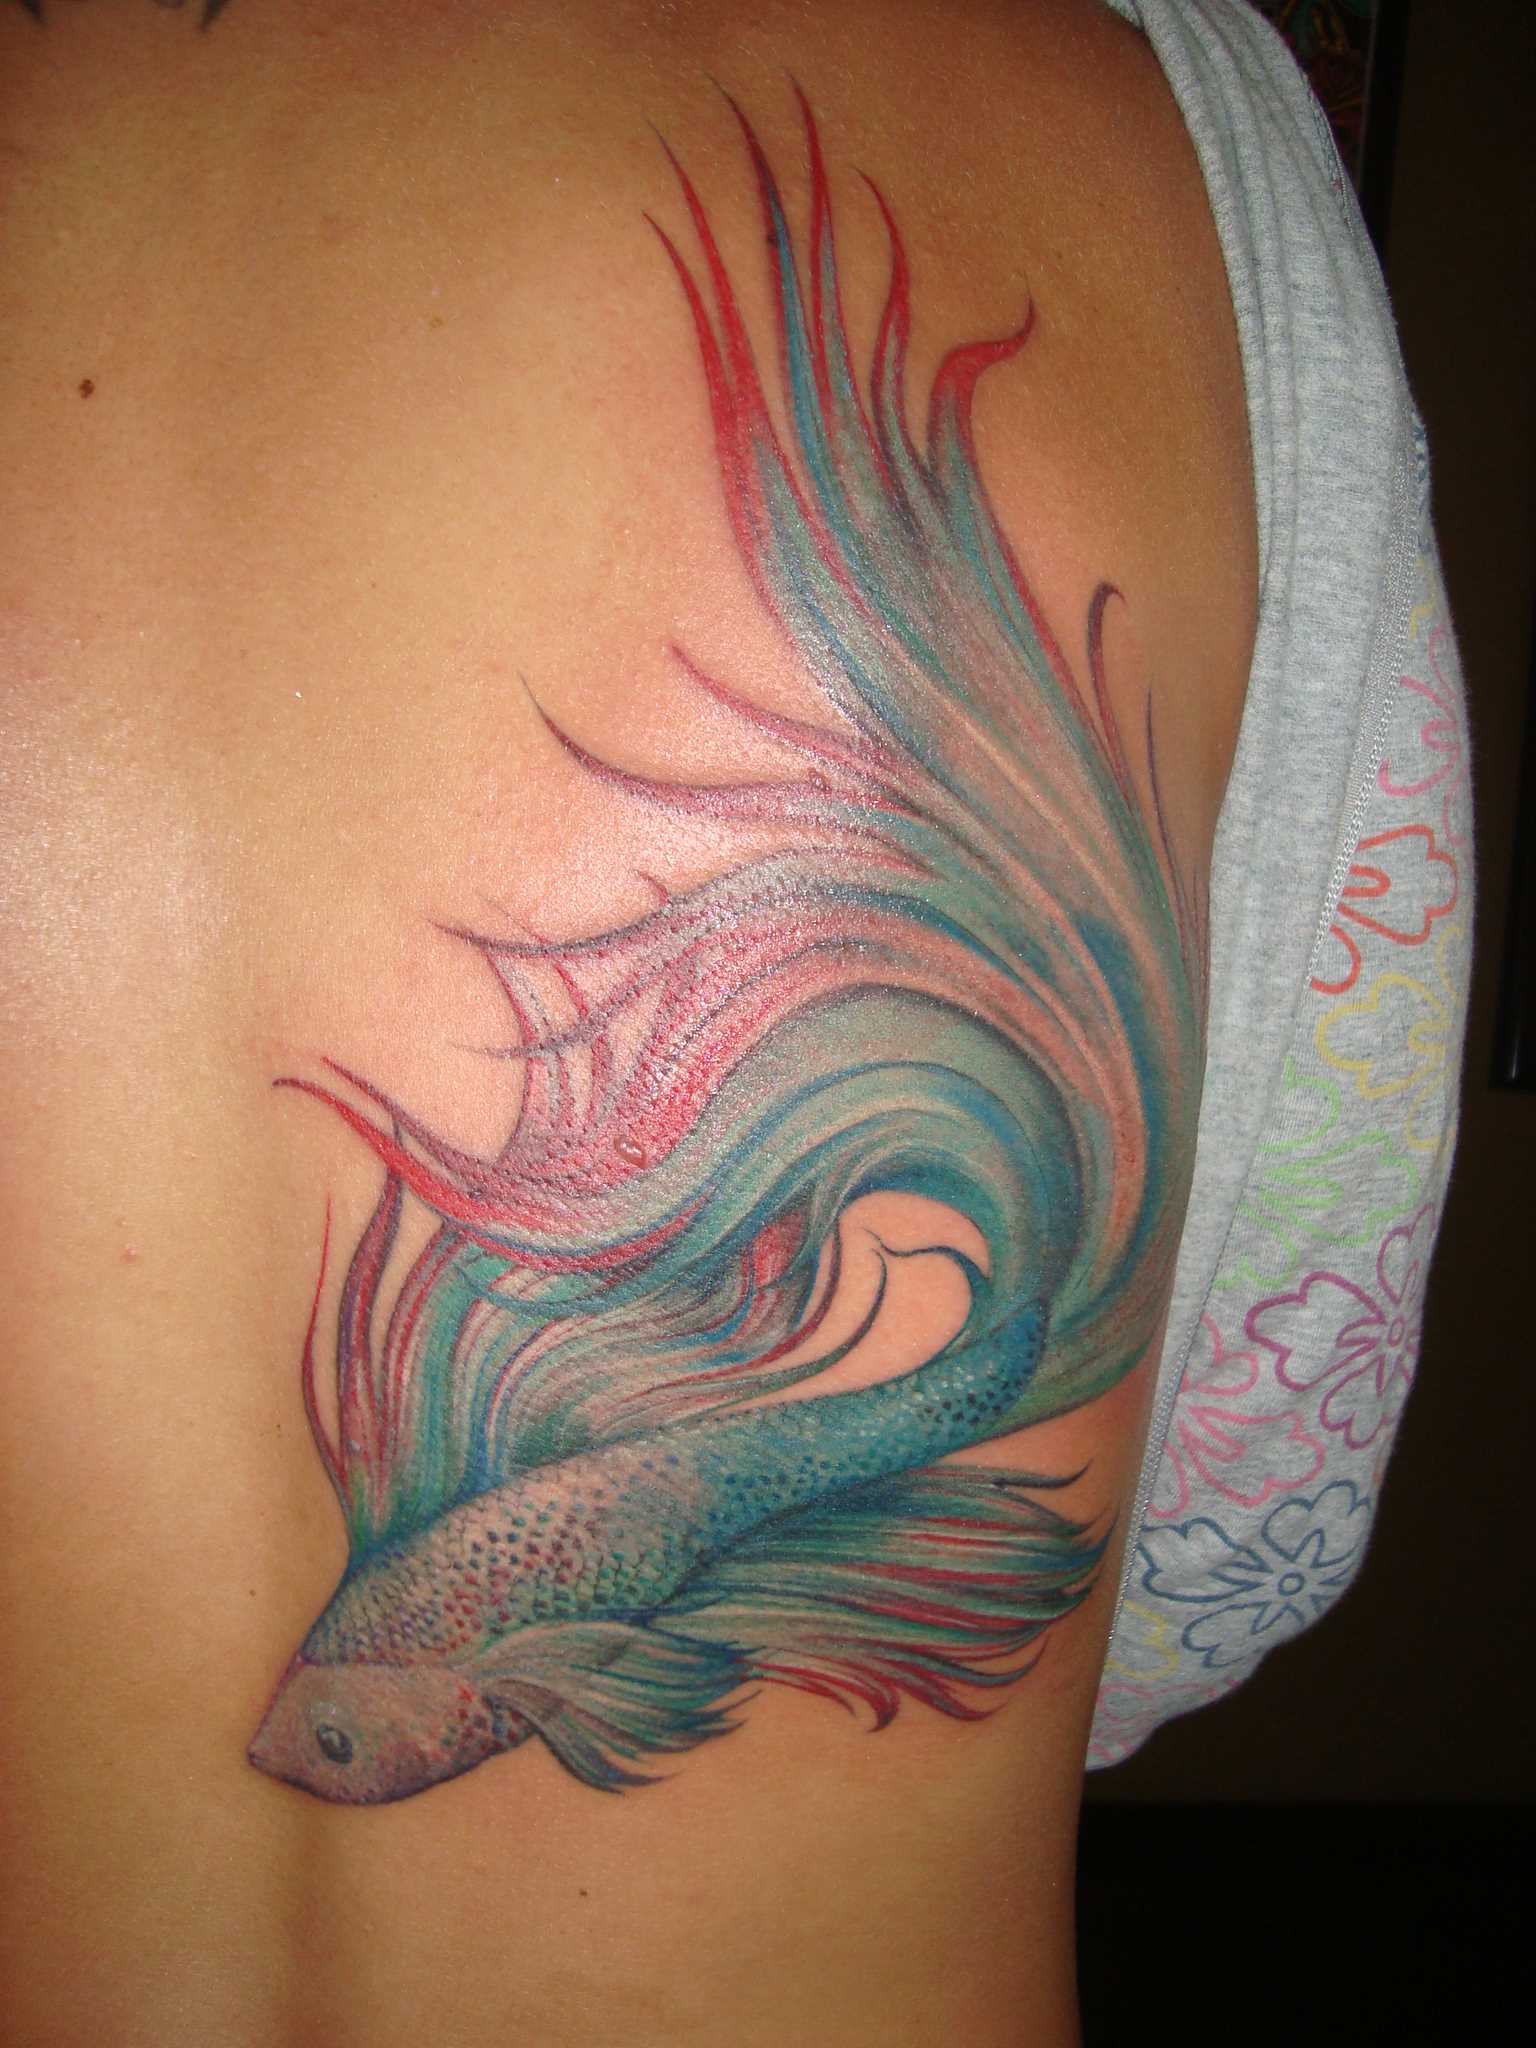 Tatuagem nas costas de uma menina - peixe